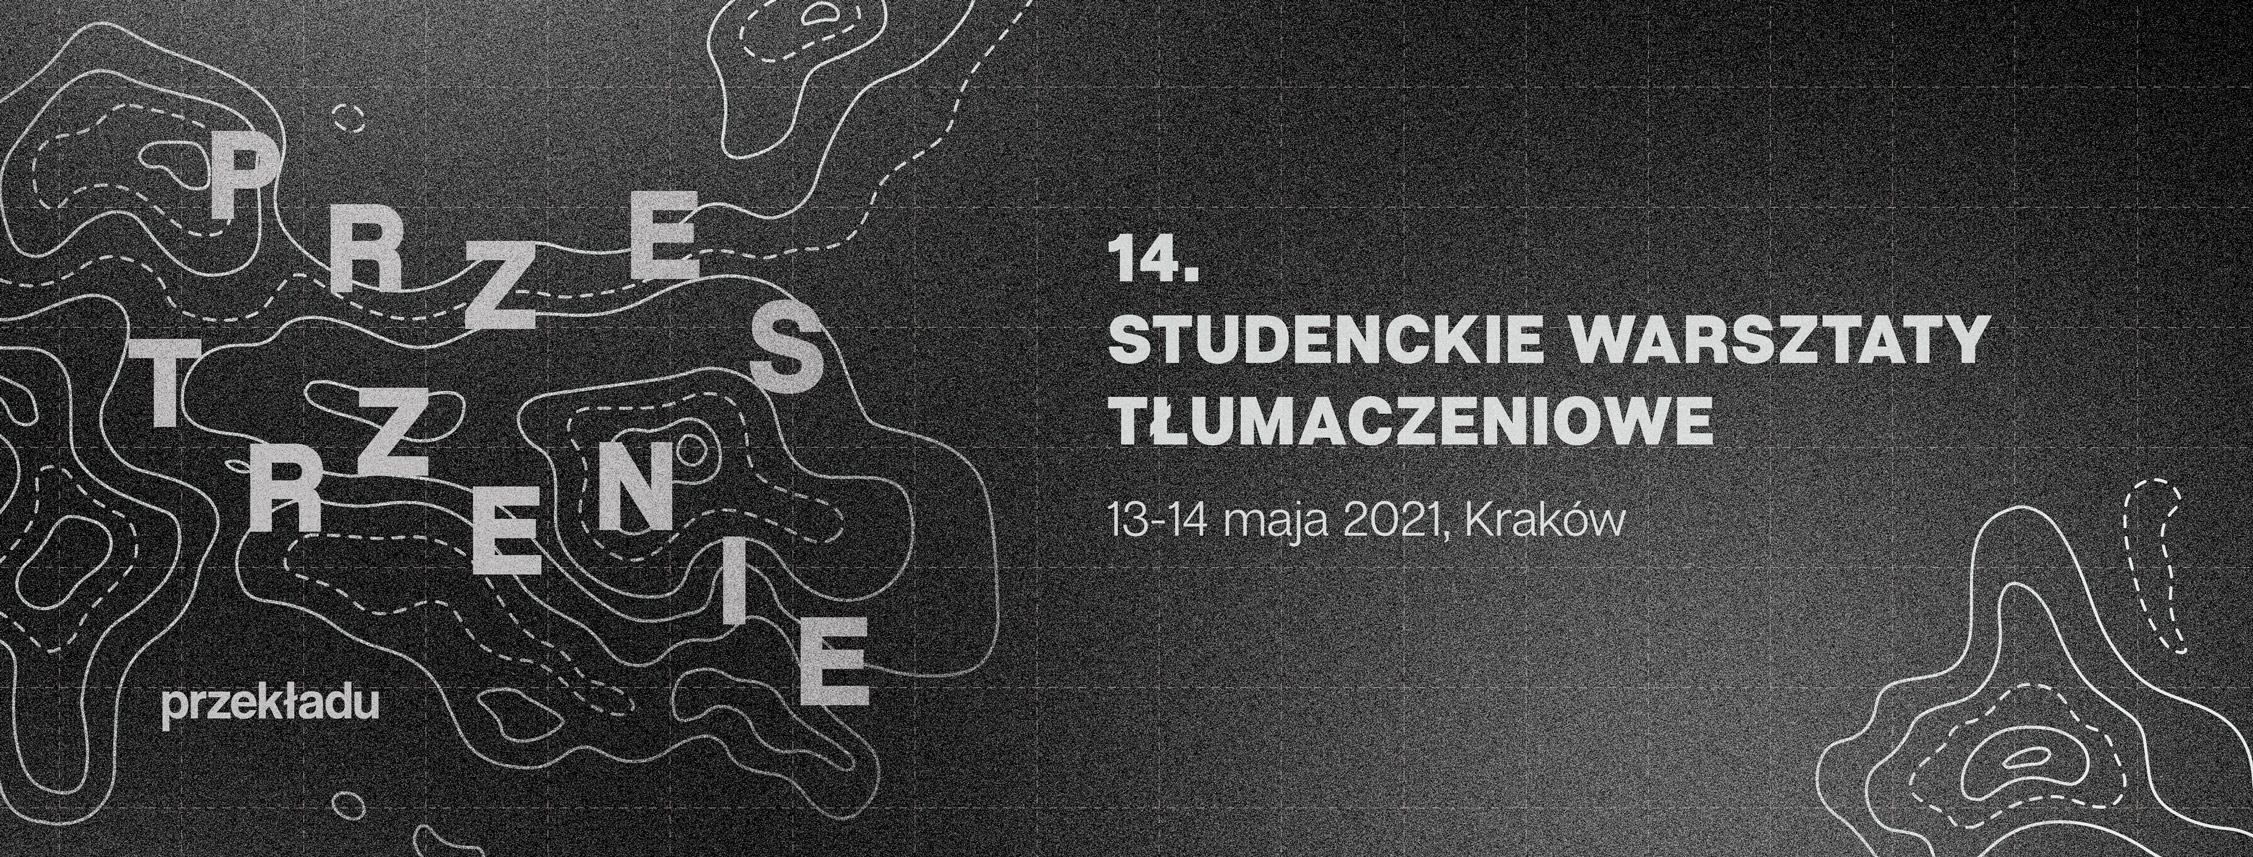 Studenckie Warsztaty Tłumaczeniowe 2021